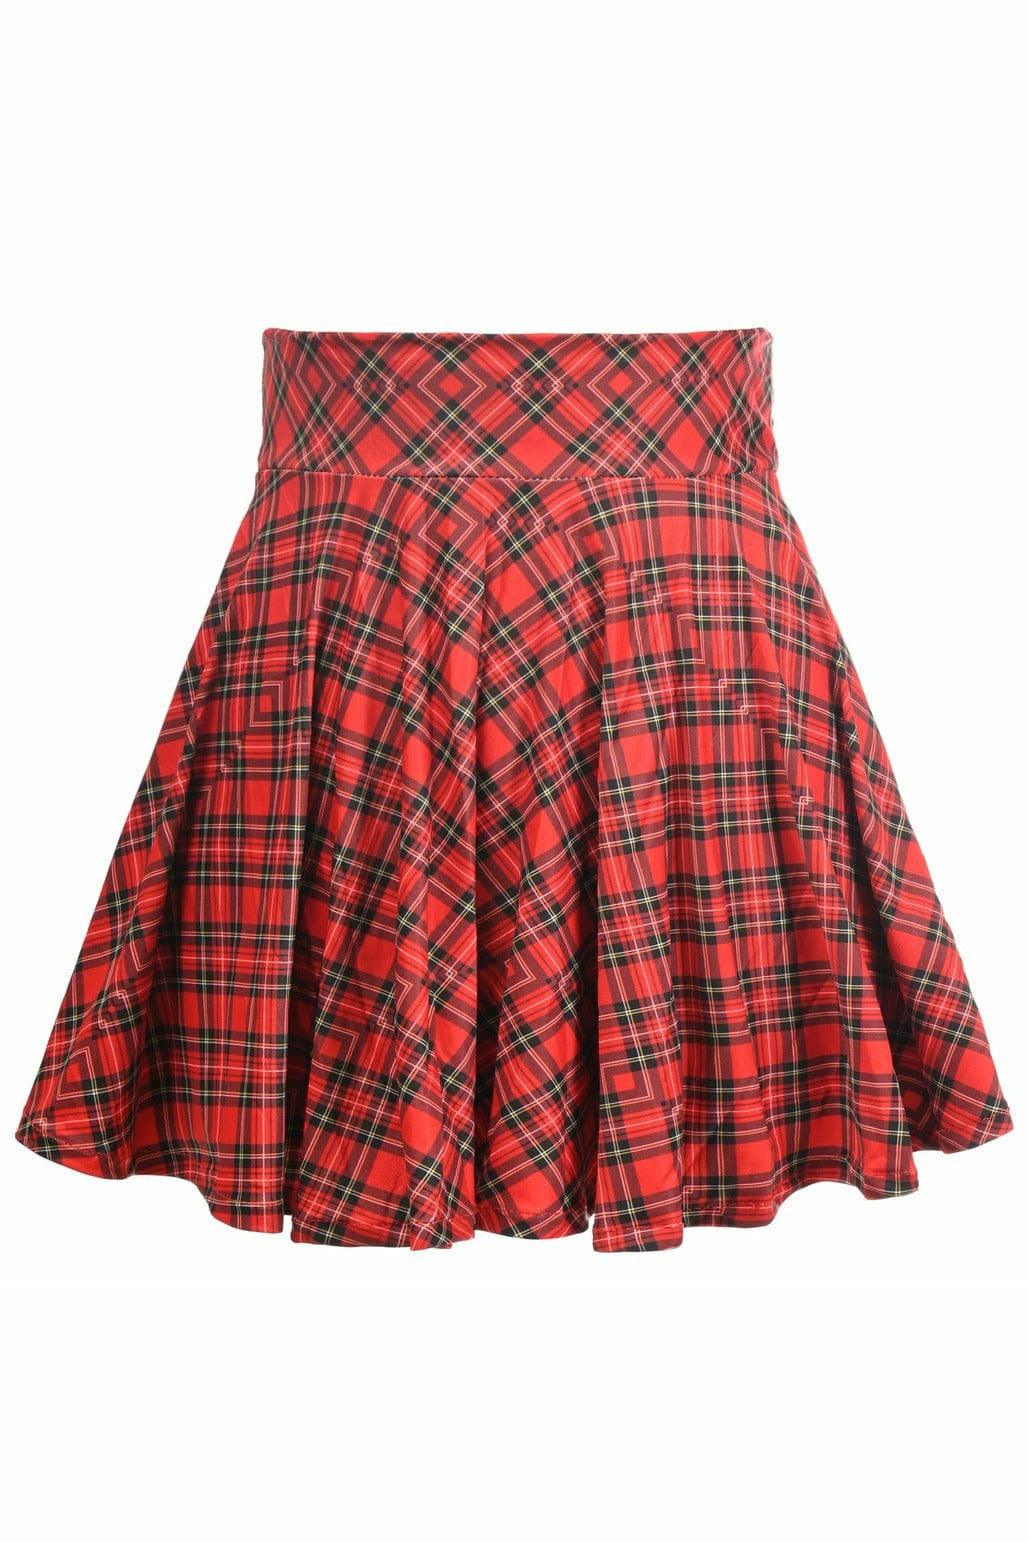 Red Plaid Stretch Lycra Skirt - AMIClubwear